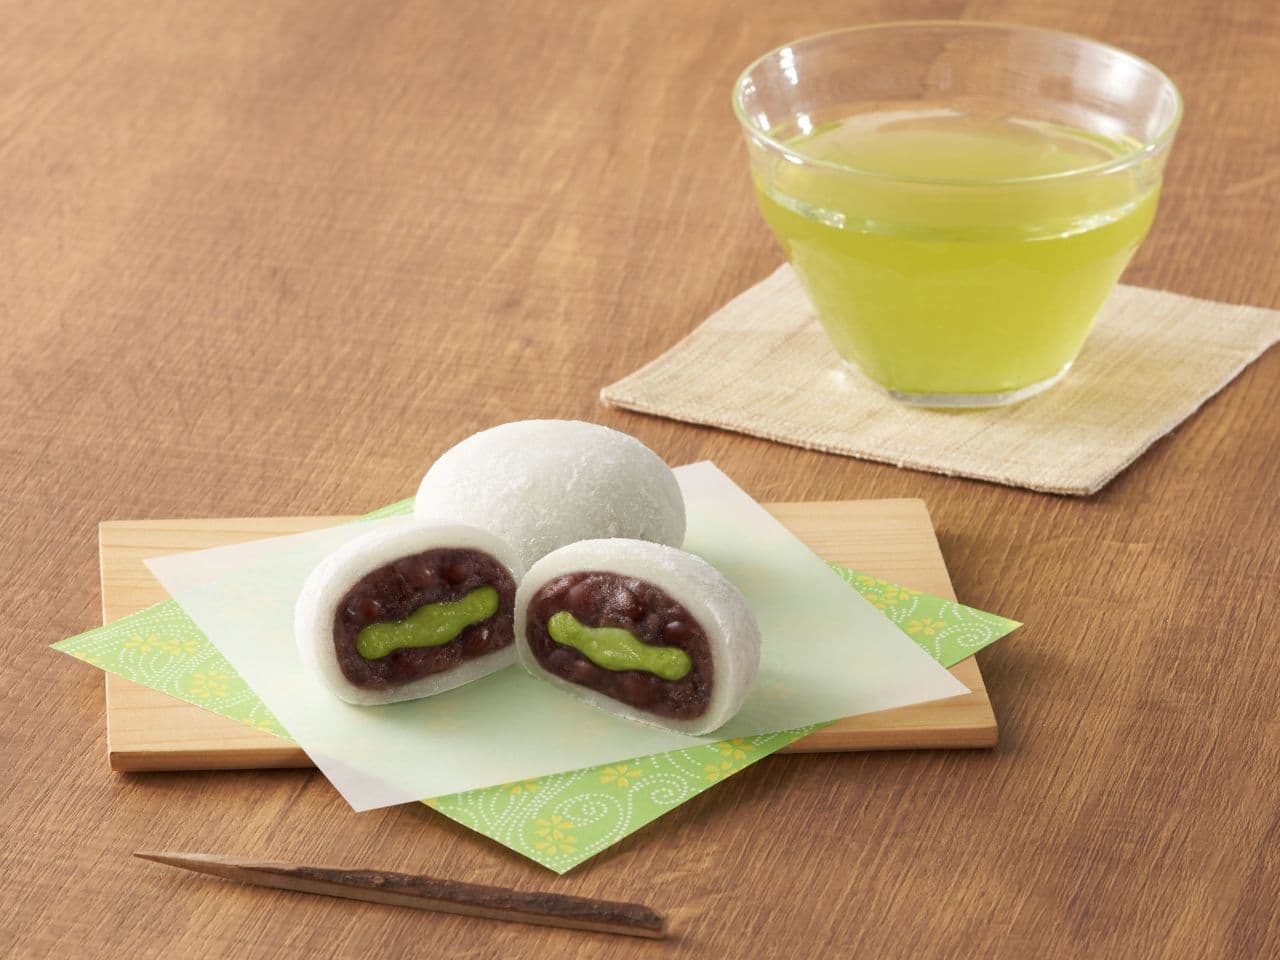 Imuraya "4-packs of green tea cream Daifuku (mashed sweet bean paste)